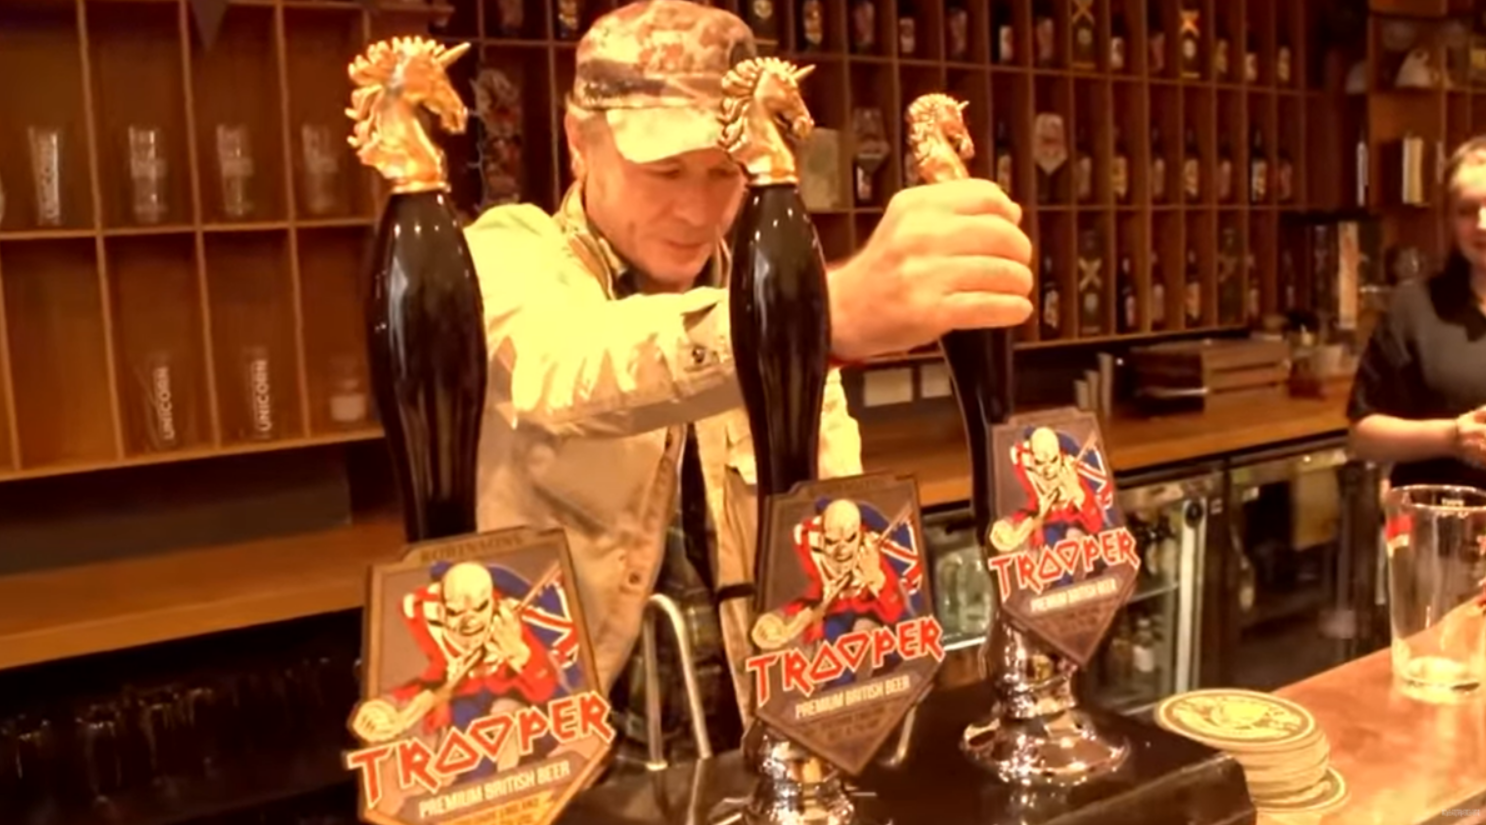 Iron Maiden divulga video de aniversário da cerveja Trooper com Bruce Dickinson servindo os fãs